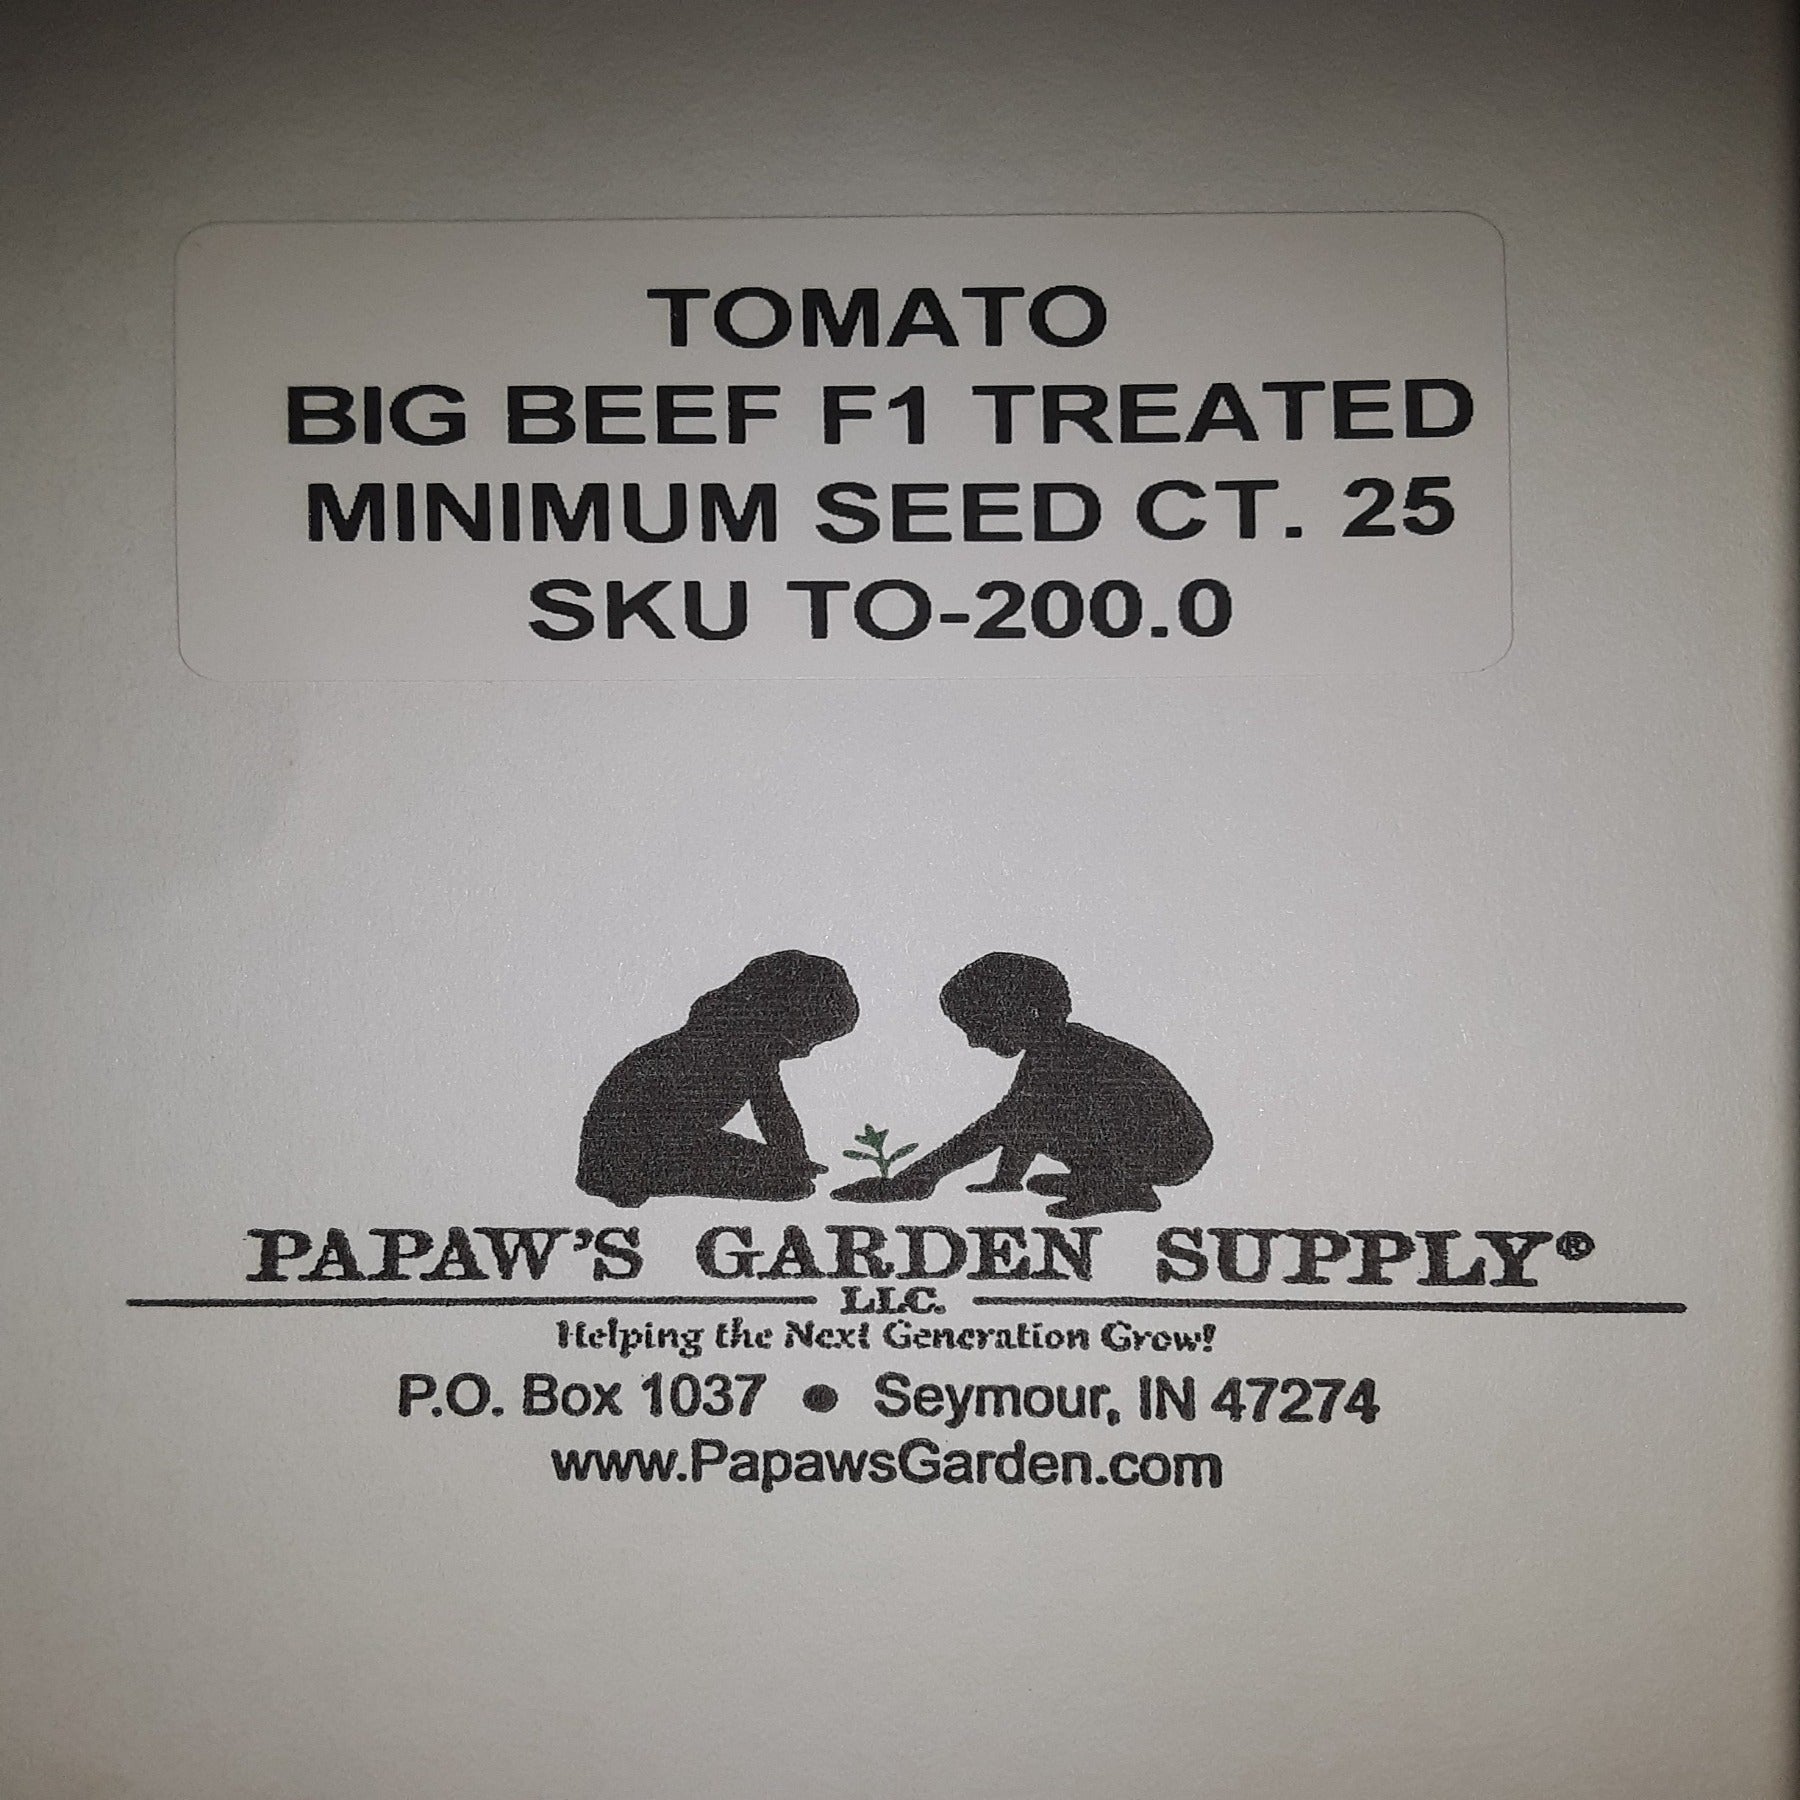 Big Beef Hybrid Treated Tomato Seeds